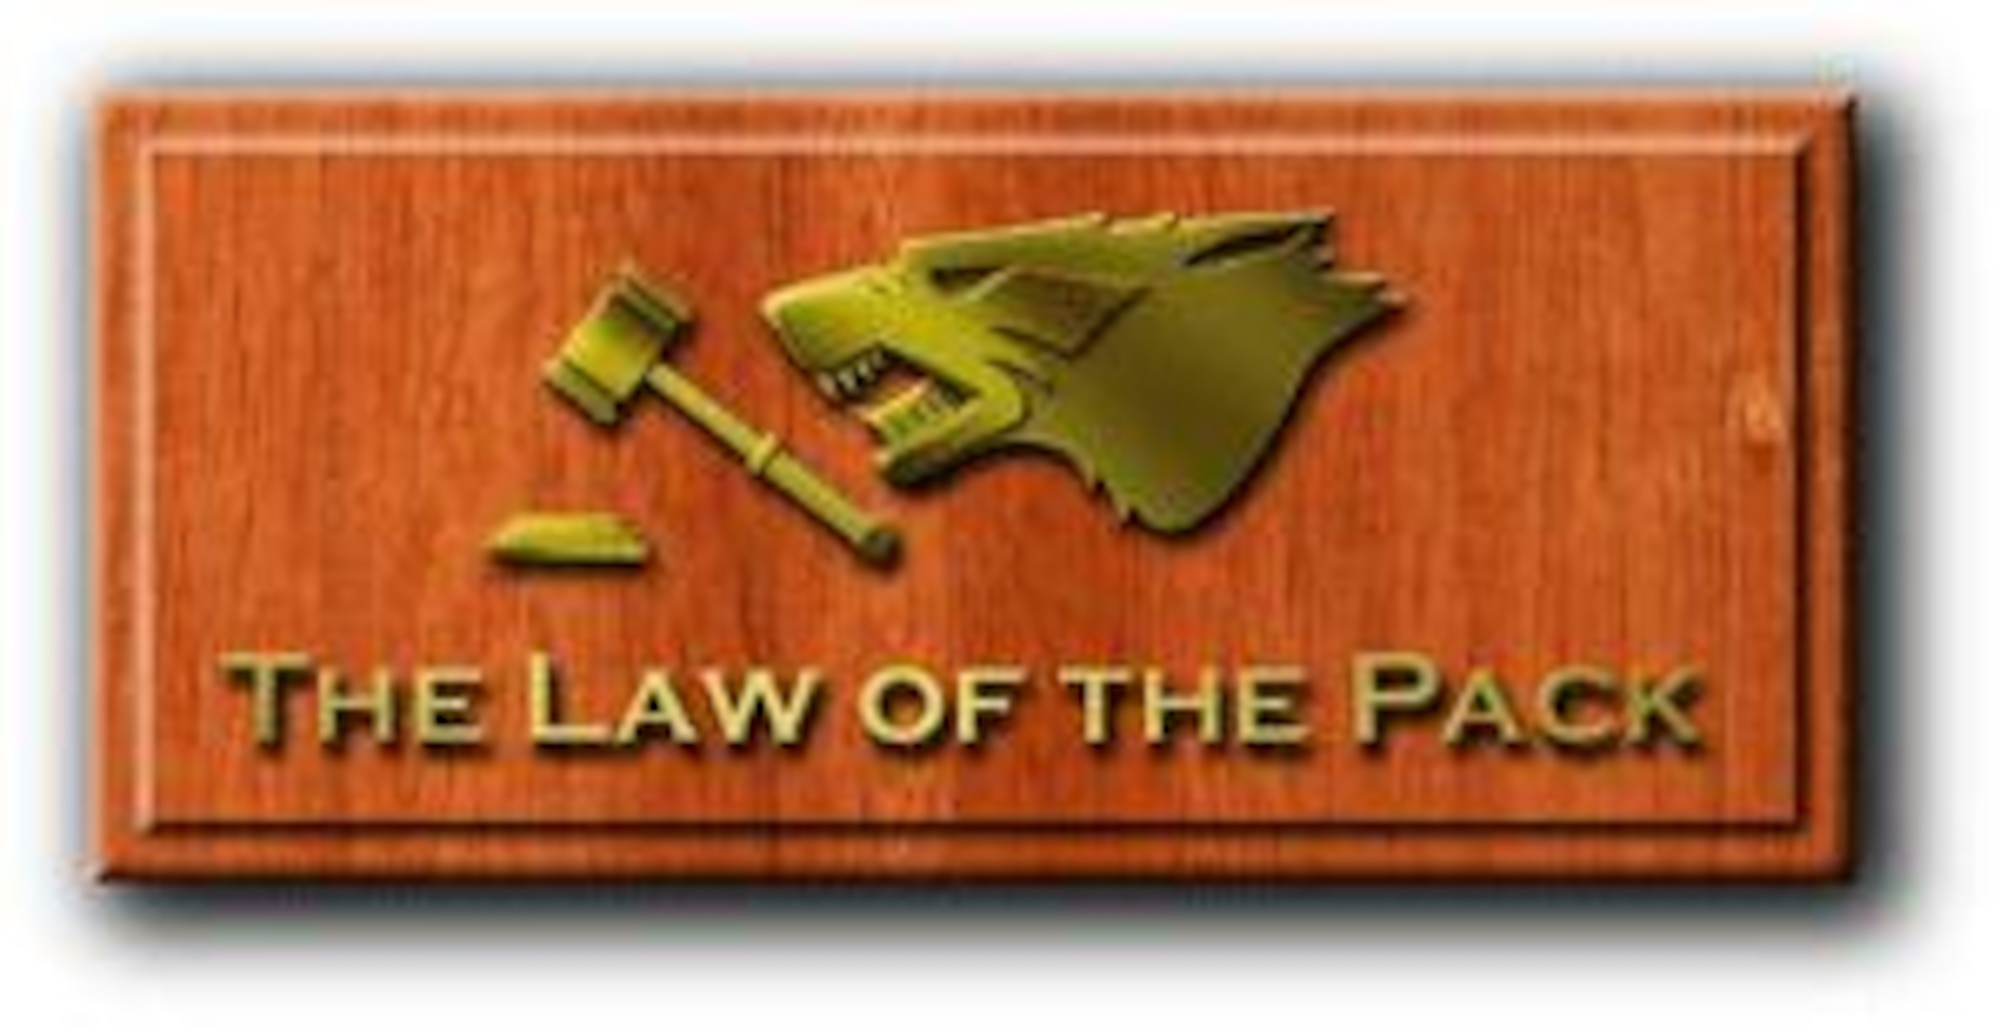 For legal assistance at your fingertips, visit https://aflegalassistance.law.af.mil.